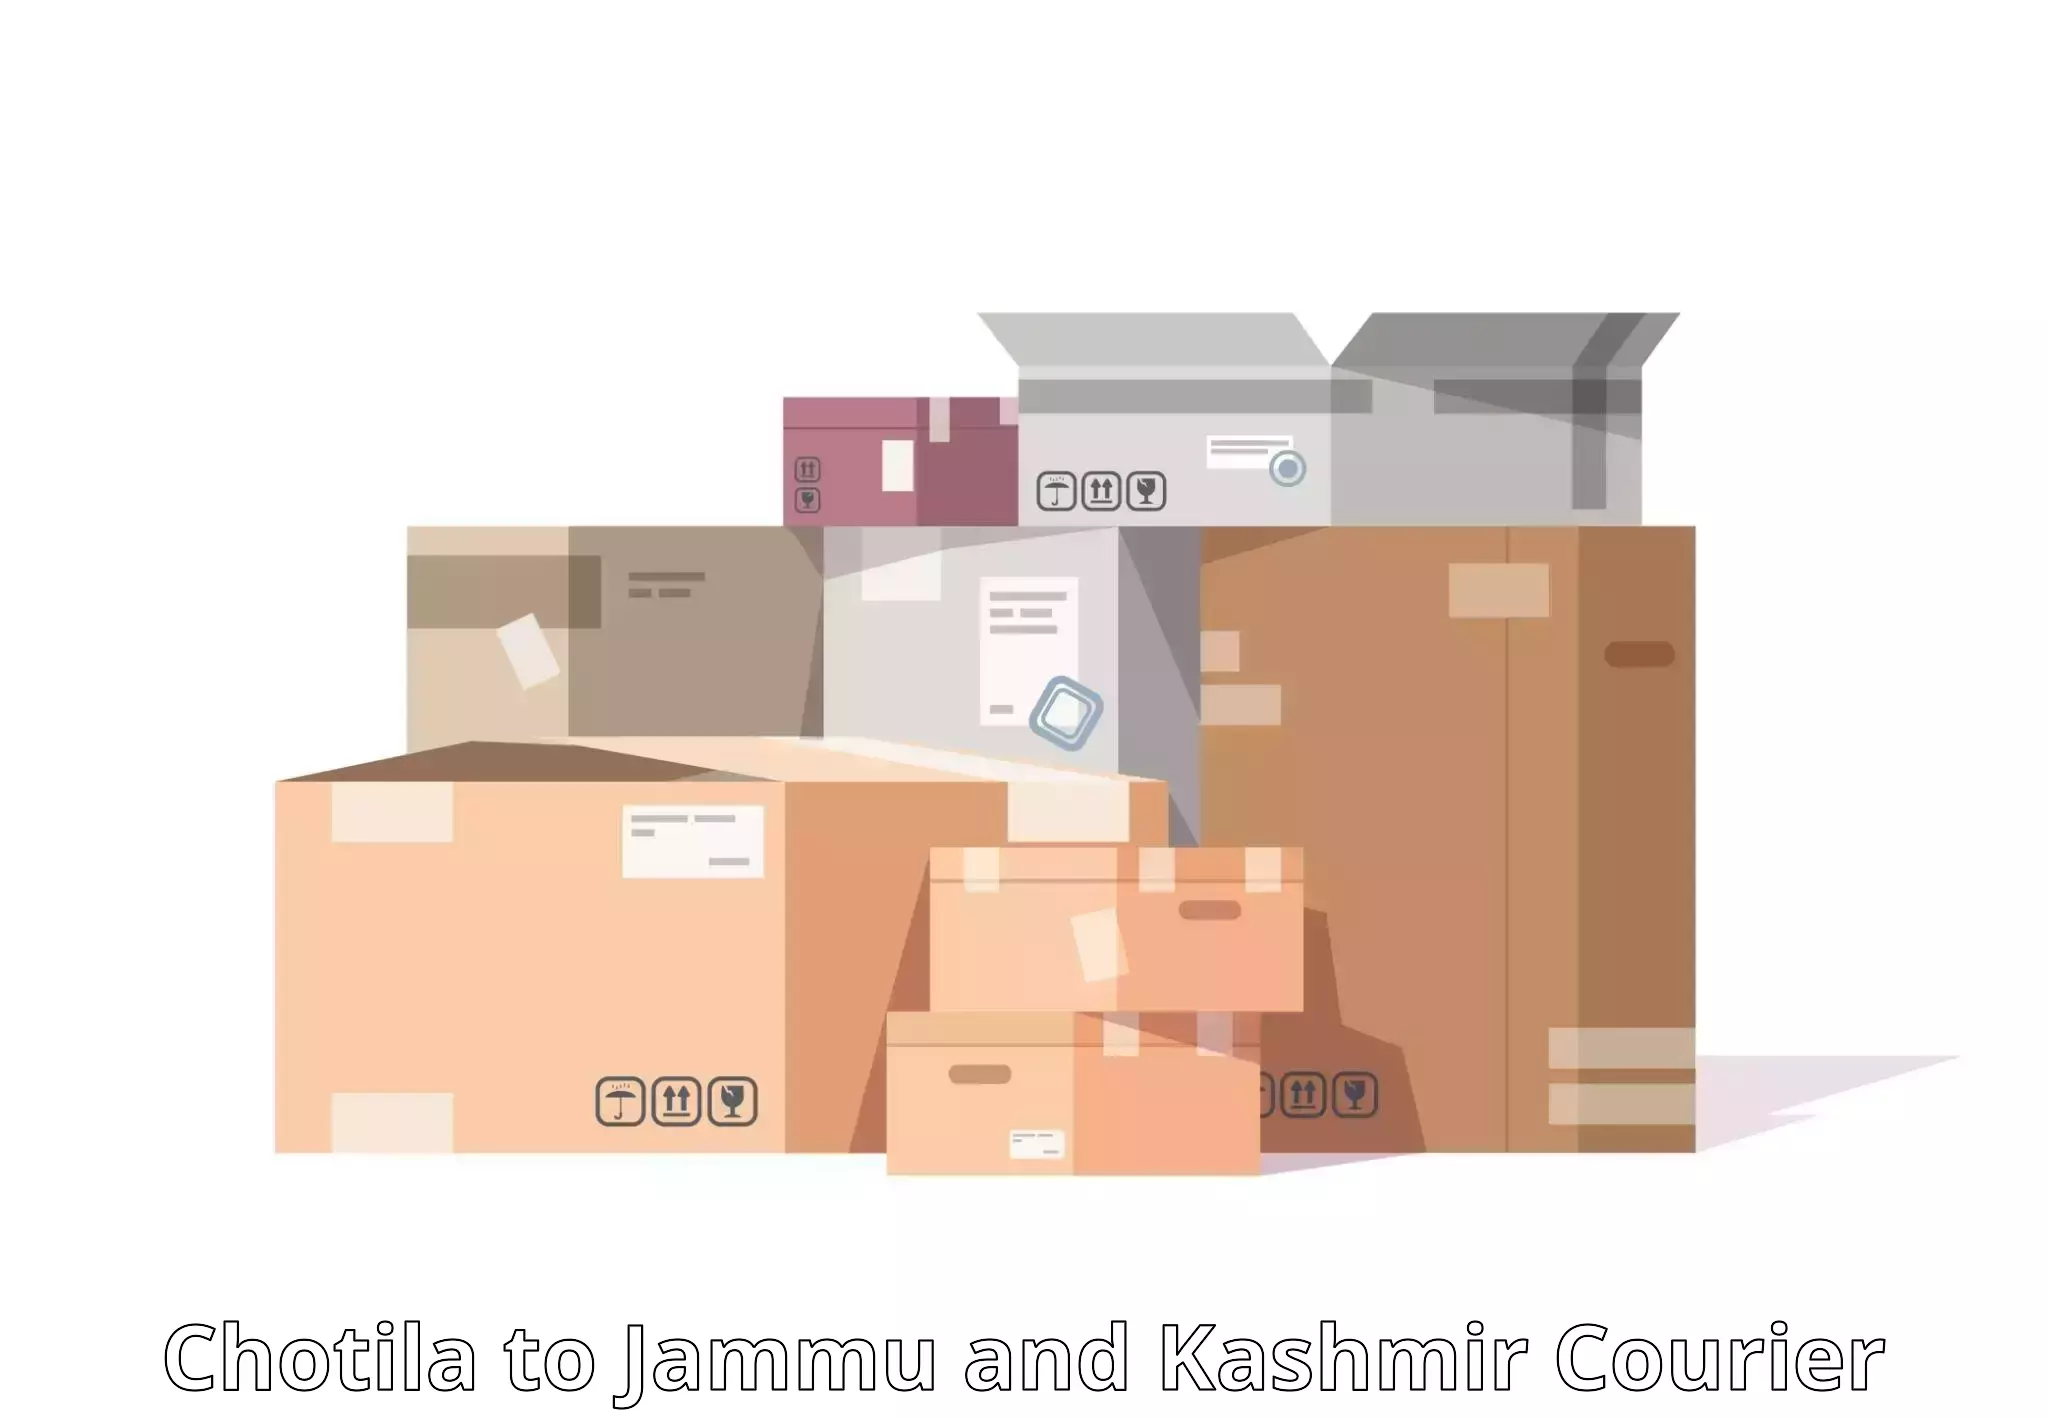 Premium courier services Chotila to Rajouri